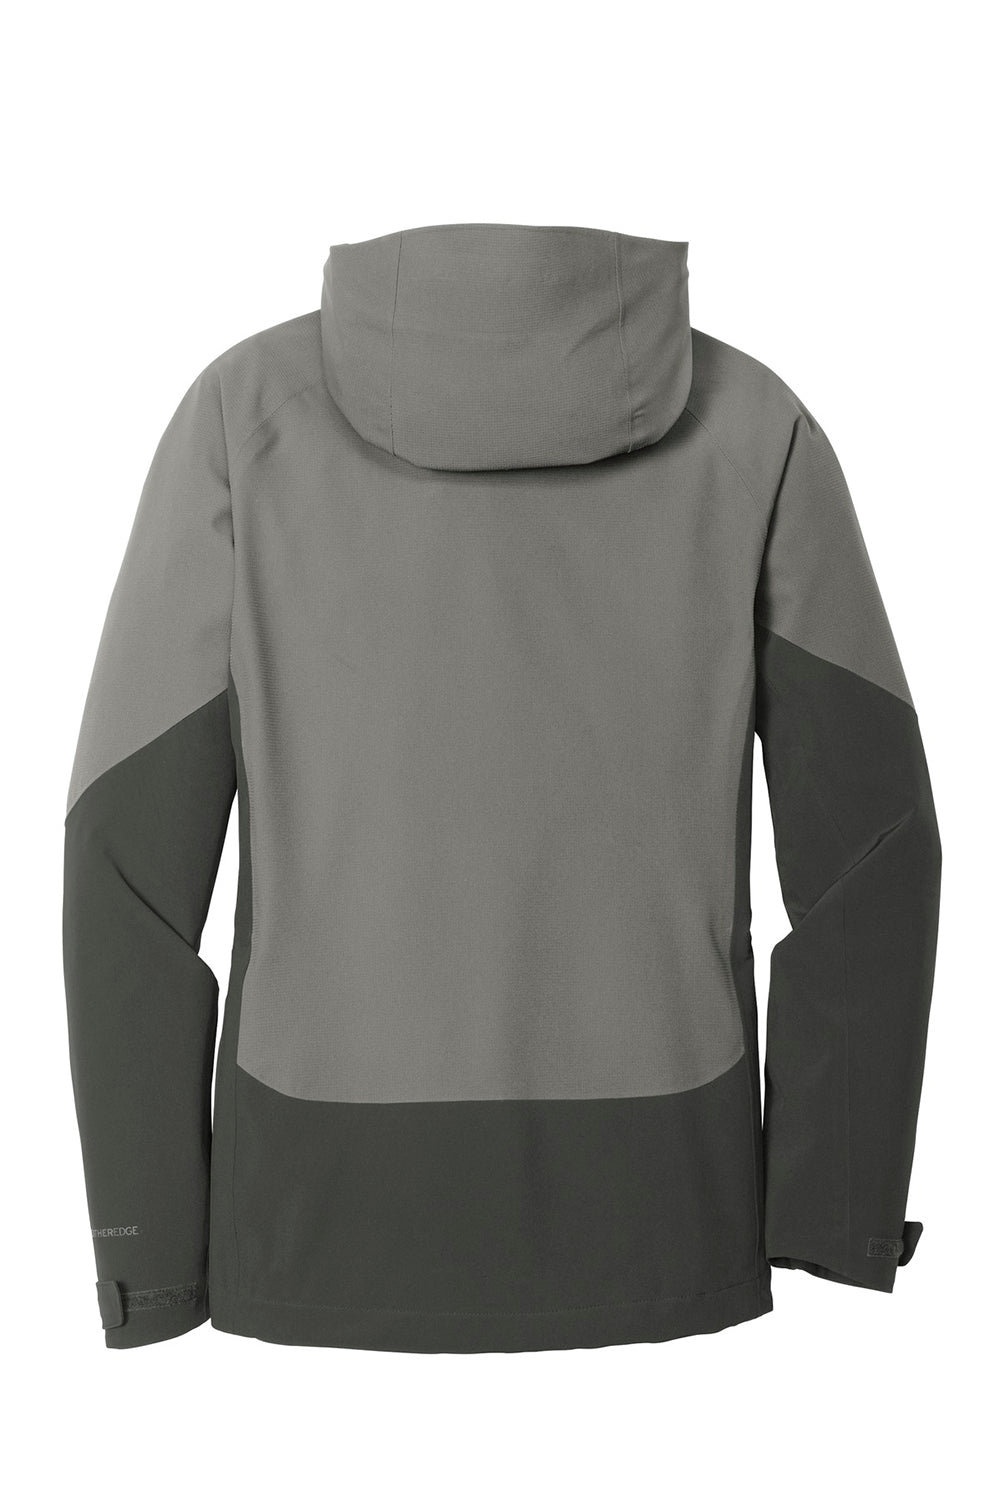 Eddie Bauer EB559 Womens WeatherEdge Waterproof Full Zip Hooded Jacket Metal Grey Flat Back